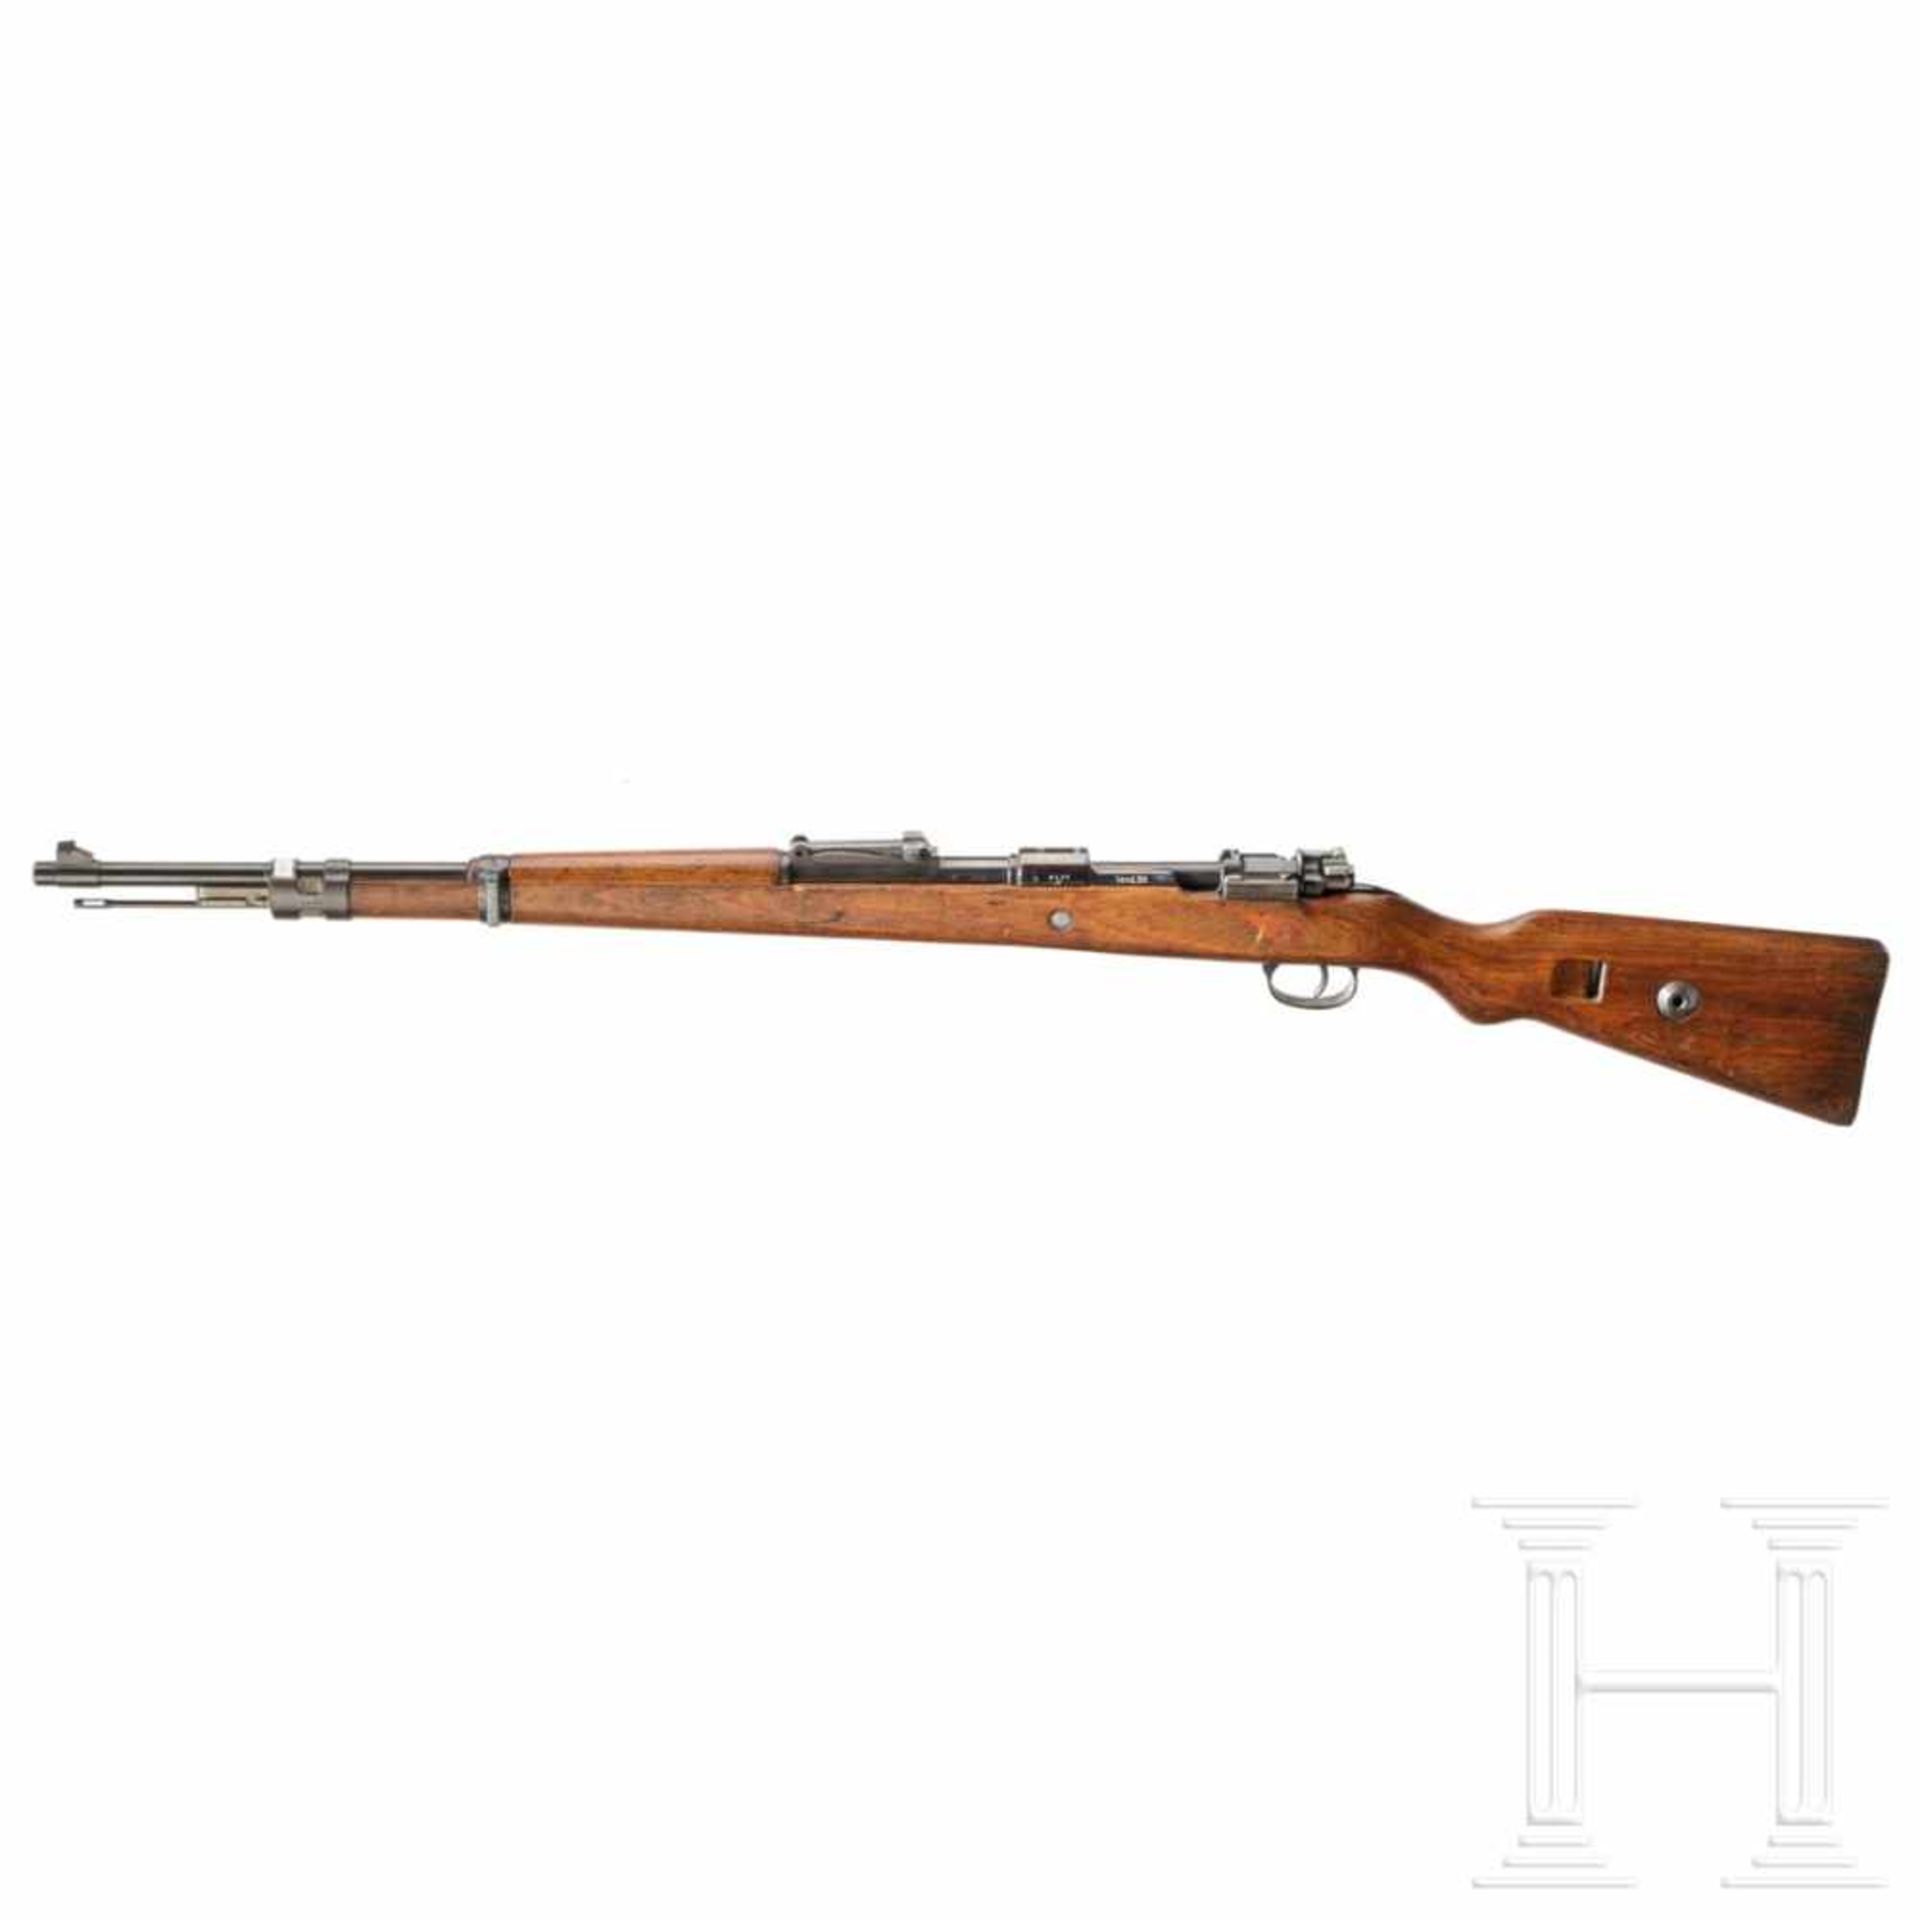 A carbine 98 k, code "237 -1939"Kal. 8x57 IS, Nr. 3140c, nummerngleich. Blanker Lauf. - Bild 2 aus 3